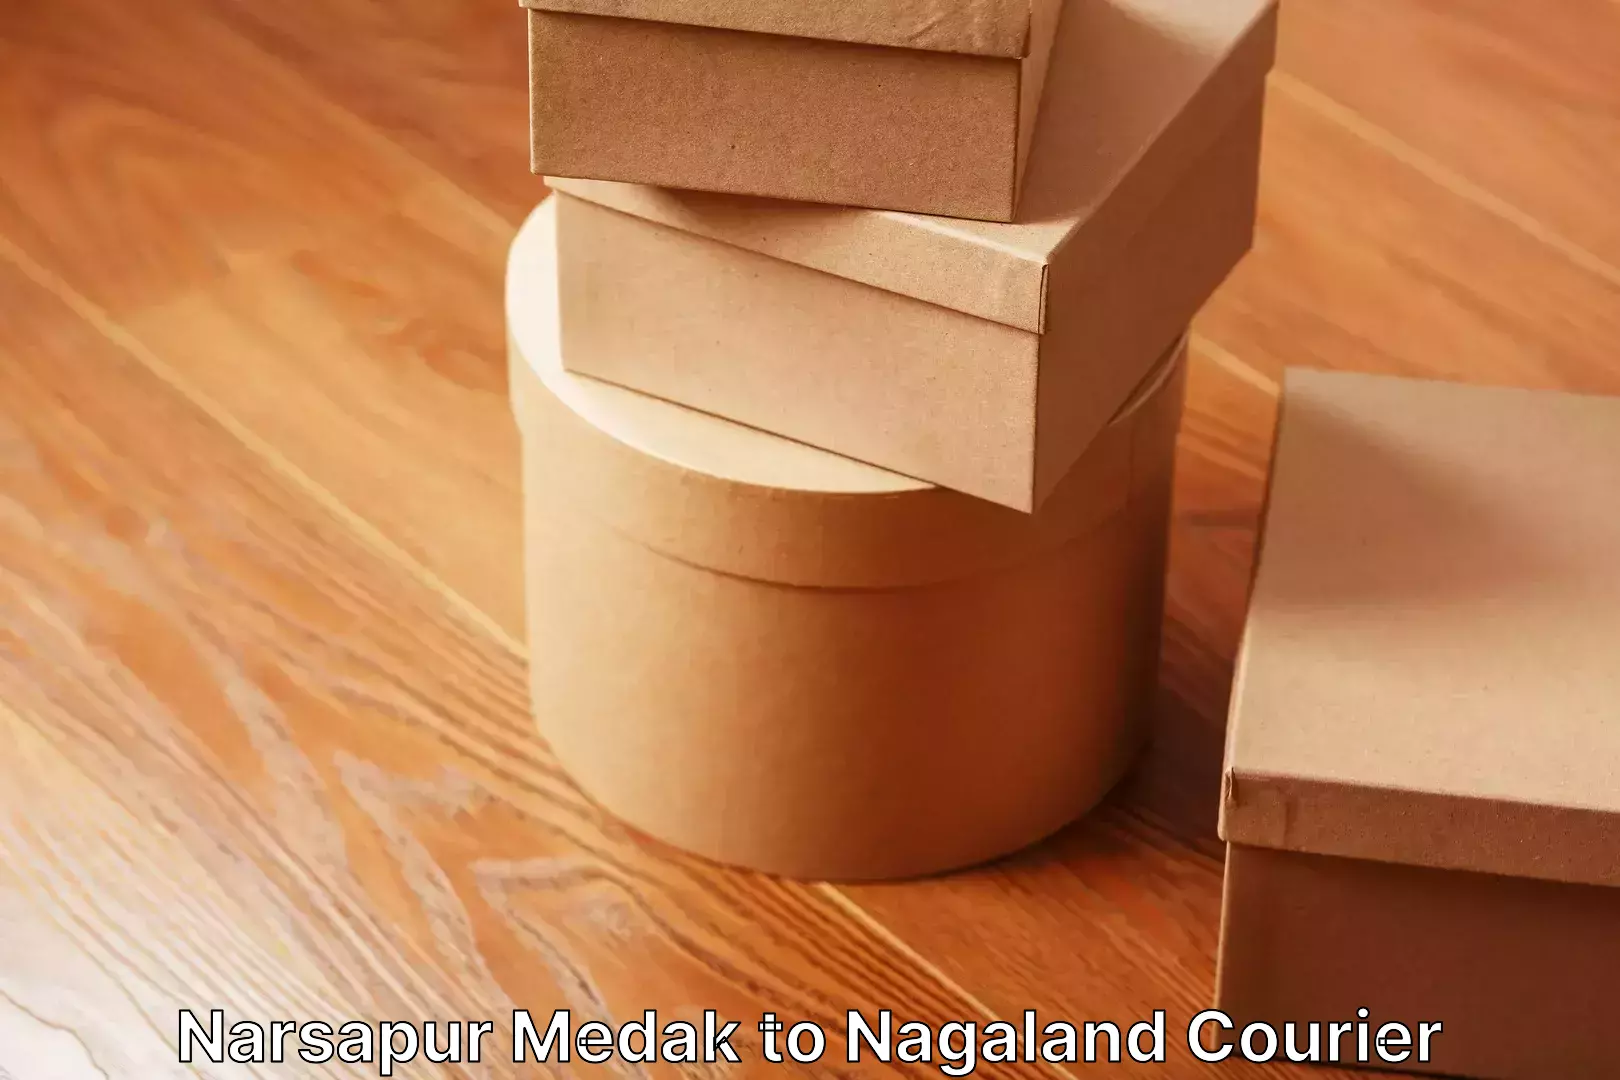 Full-service relocation Narsapur Medak to Nagaland